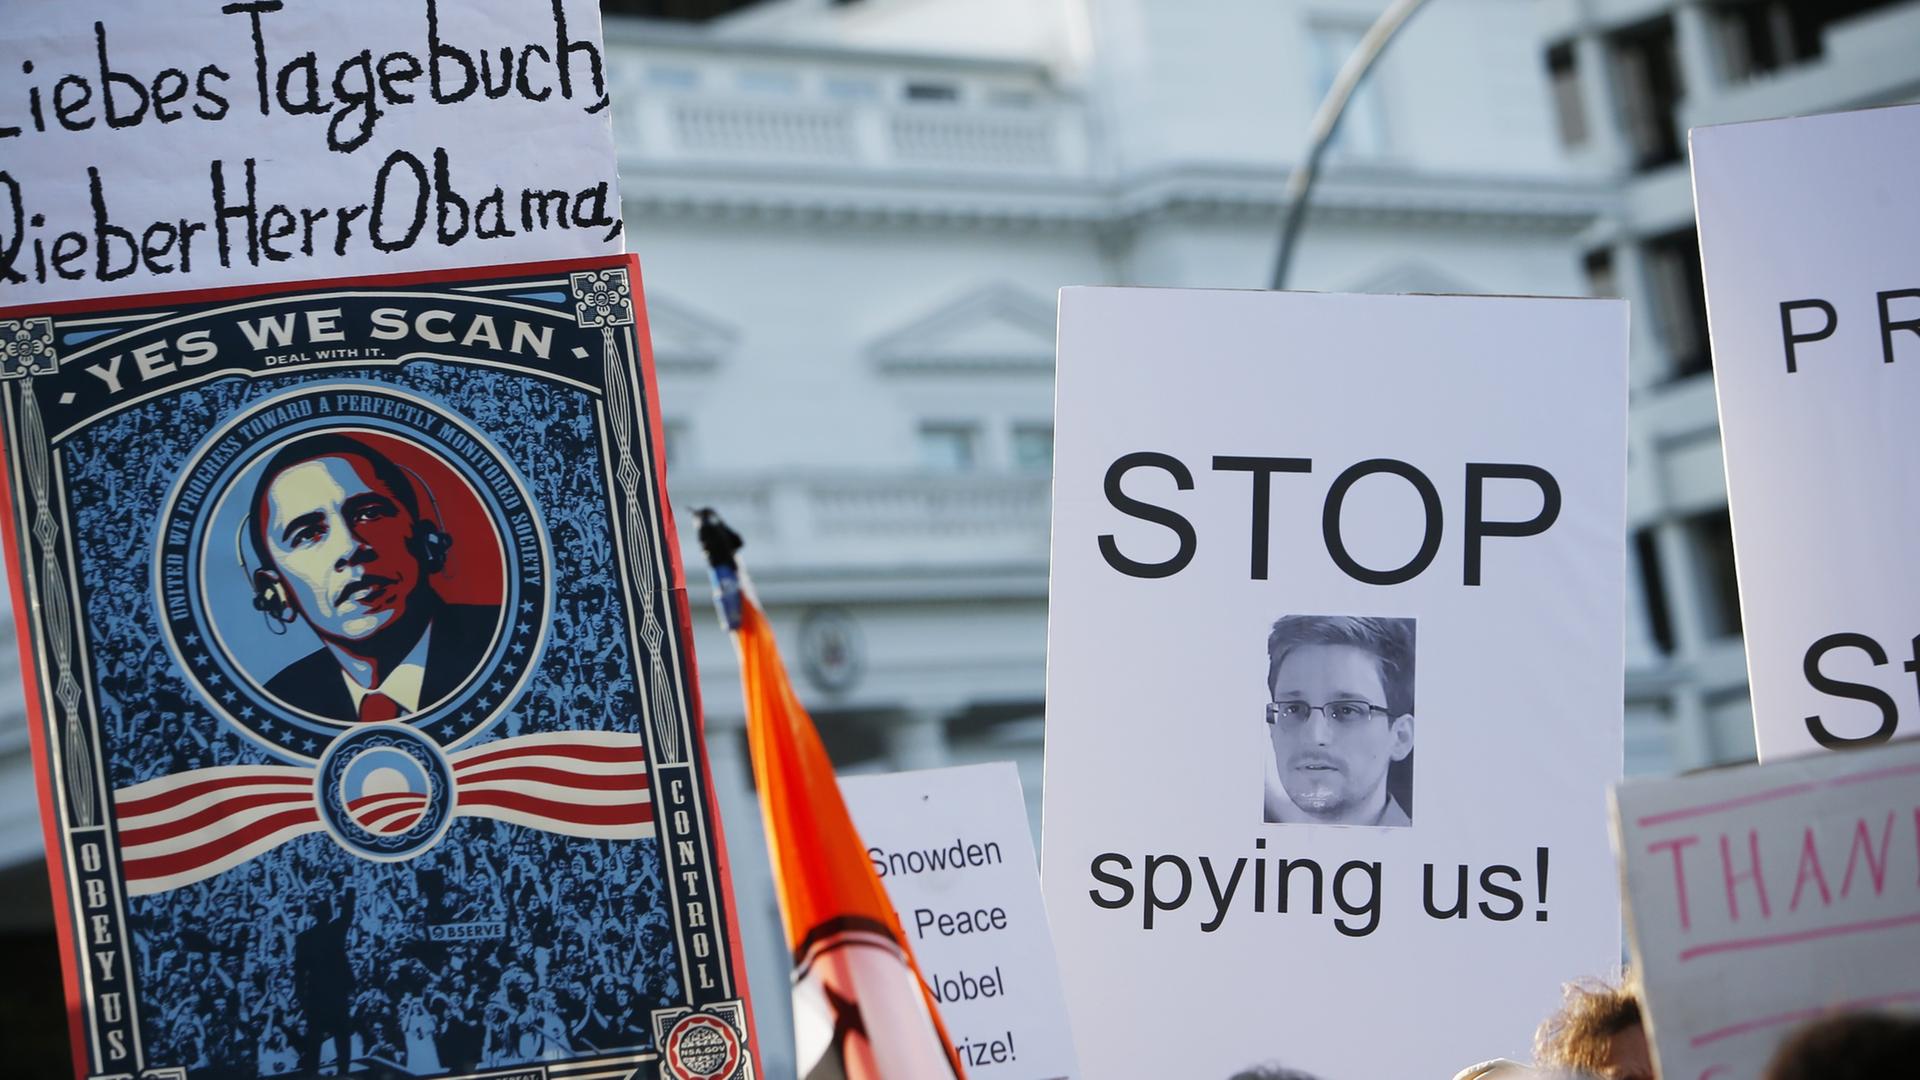 Hamburg, 11. Juli 2013 - 
Demonstranten protestieren vor dem US-Generalkonsulat in Hamburg unter dem Motto "Stop PRISM now!" gegen die weltweite Spionage, insbesondere durch den amerikanischen Geheimdienst NSA.